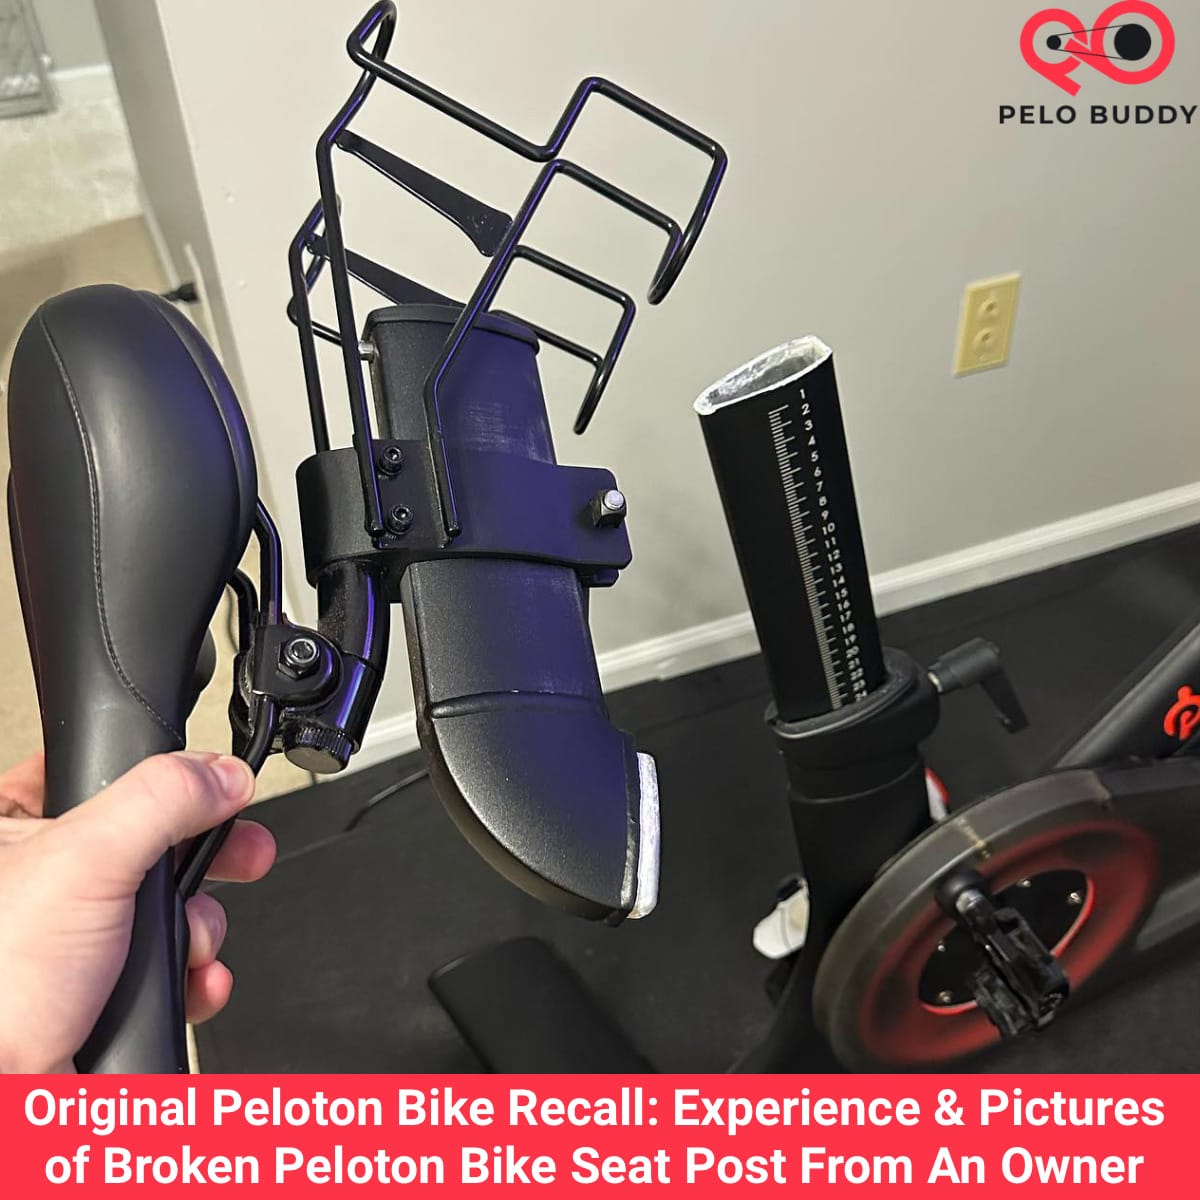 Original Peloton Bike Recall: Experience & Pictures of Broken